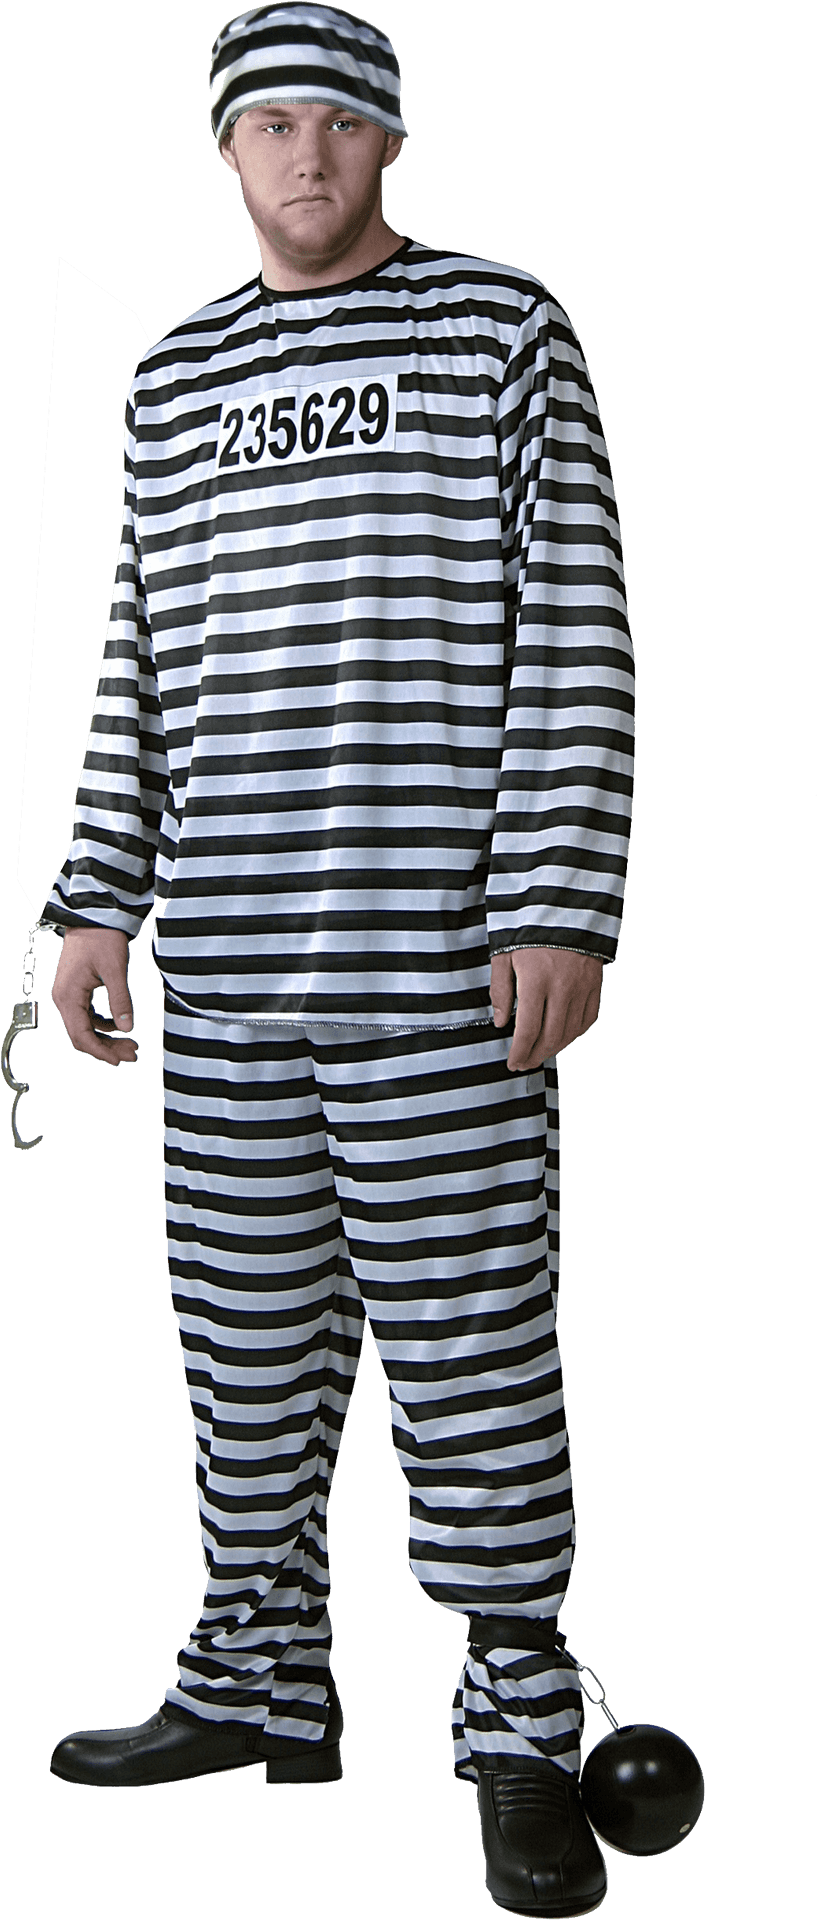 Manin Striped Prison Uniformwith Balland Chain PNG